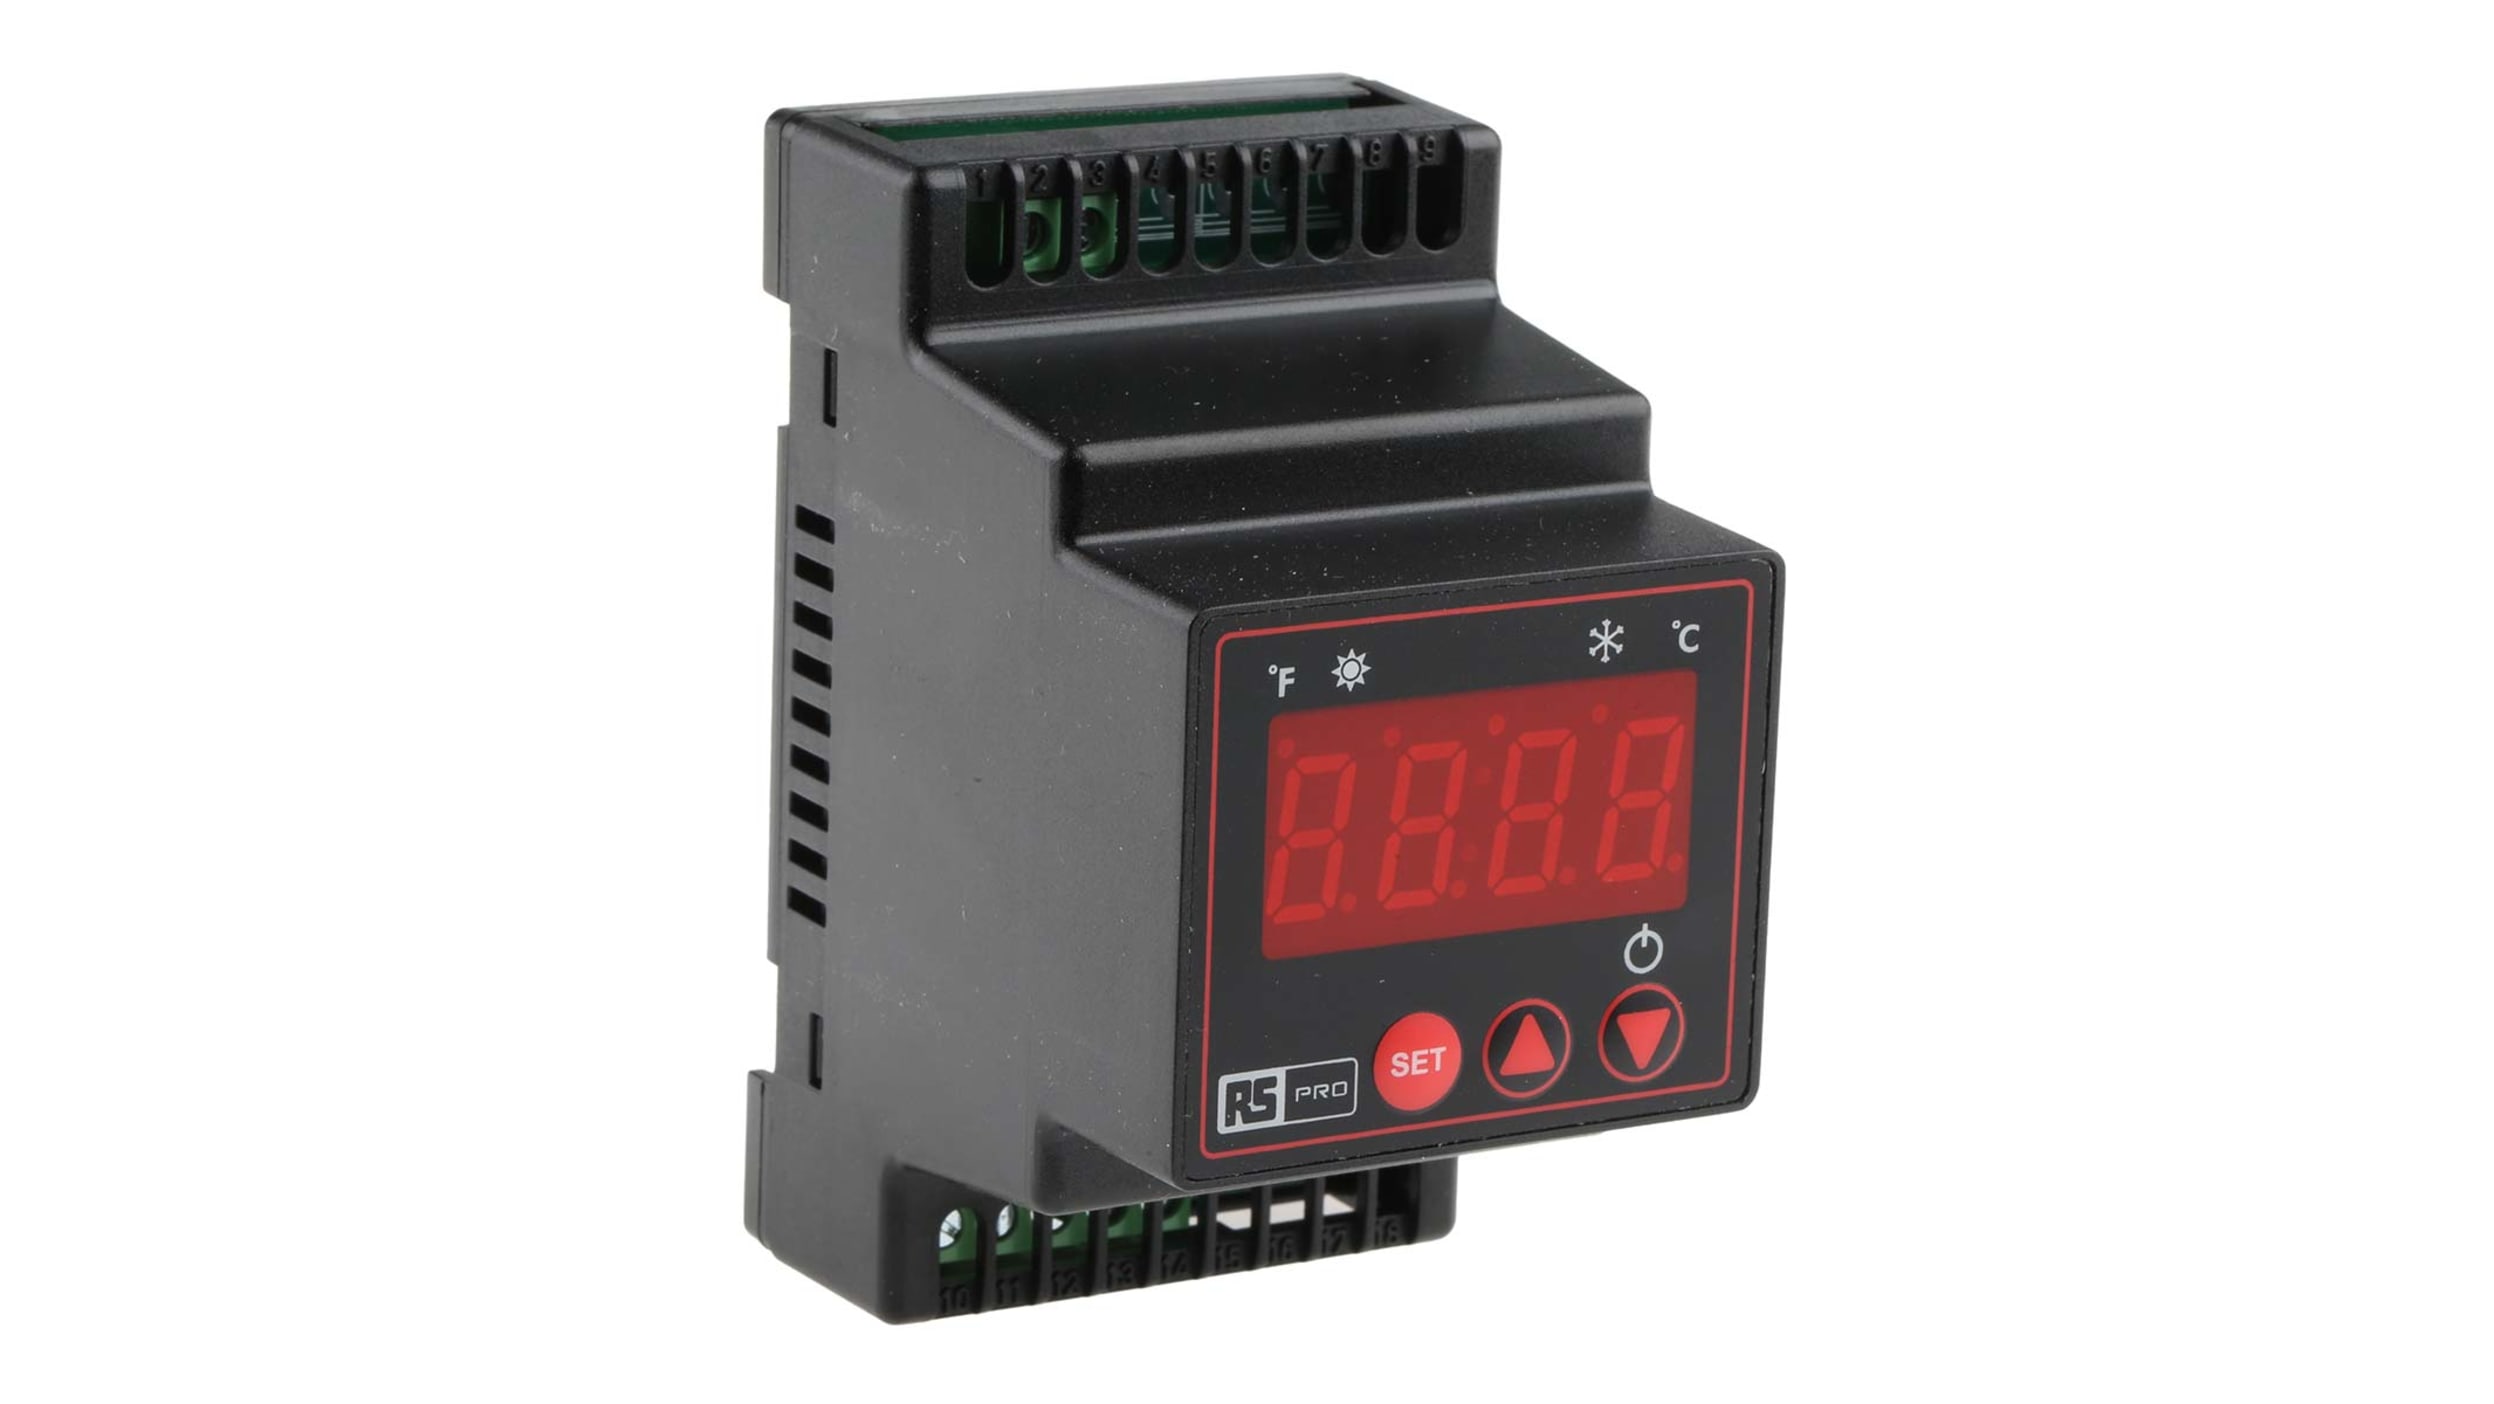 TEMPERATURREGLER DIN Hutschiene Digital Thermostat fühler 150°C